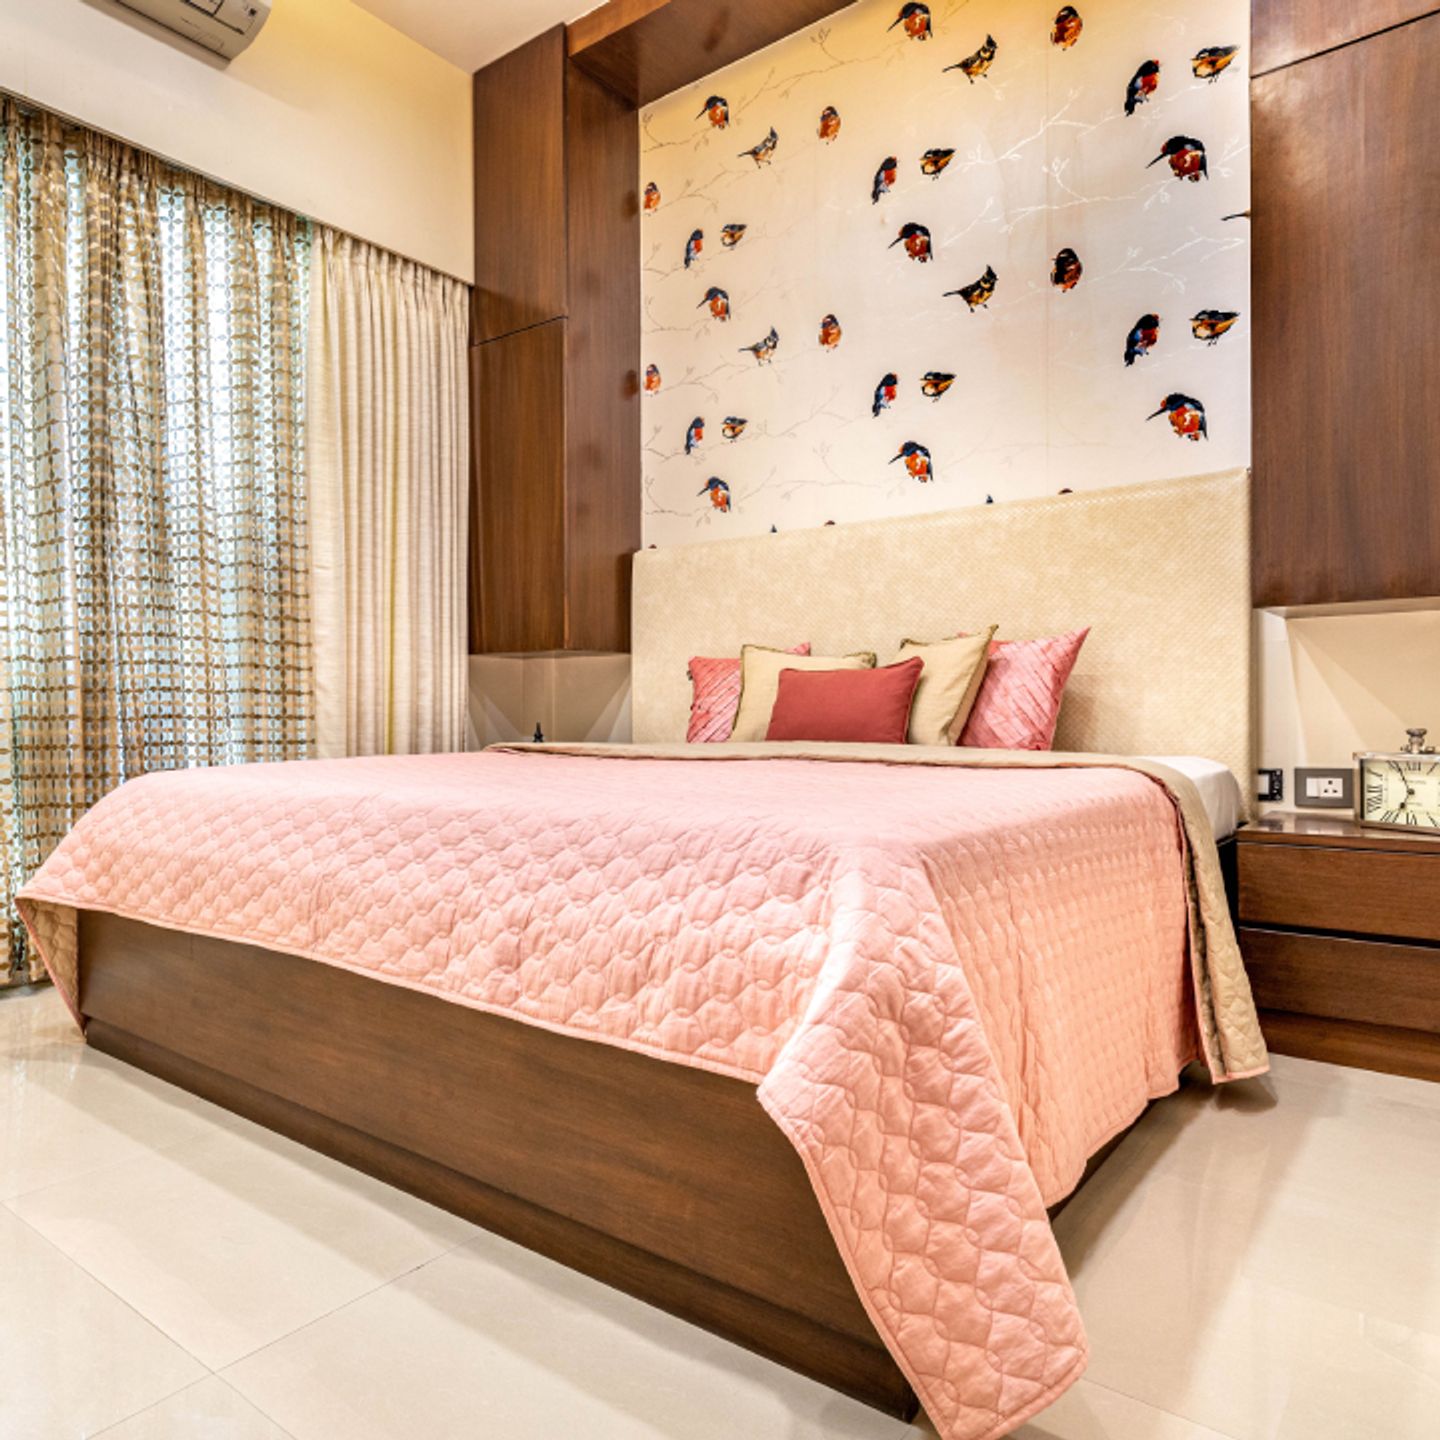 Kingfisher-Inspired Wallpaper Design For The Bedroom - Livspace